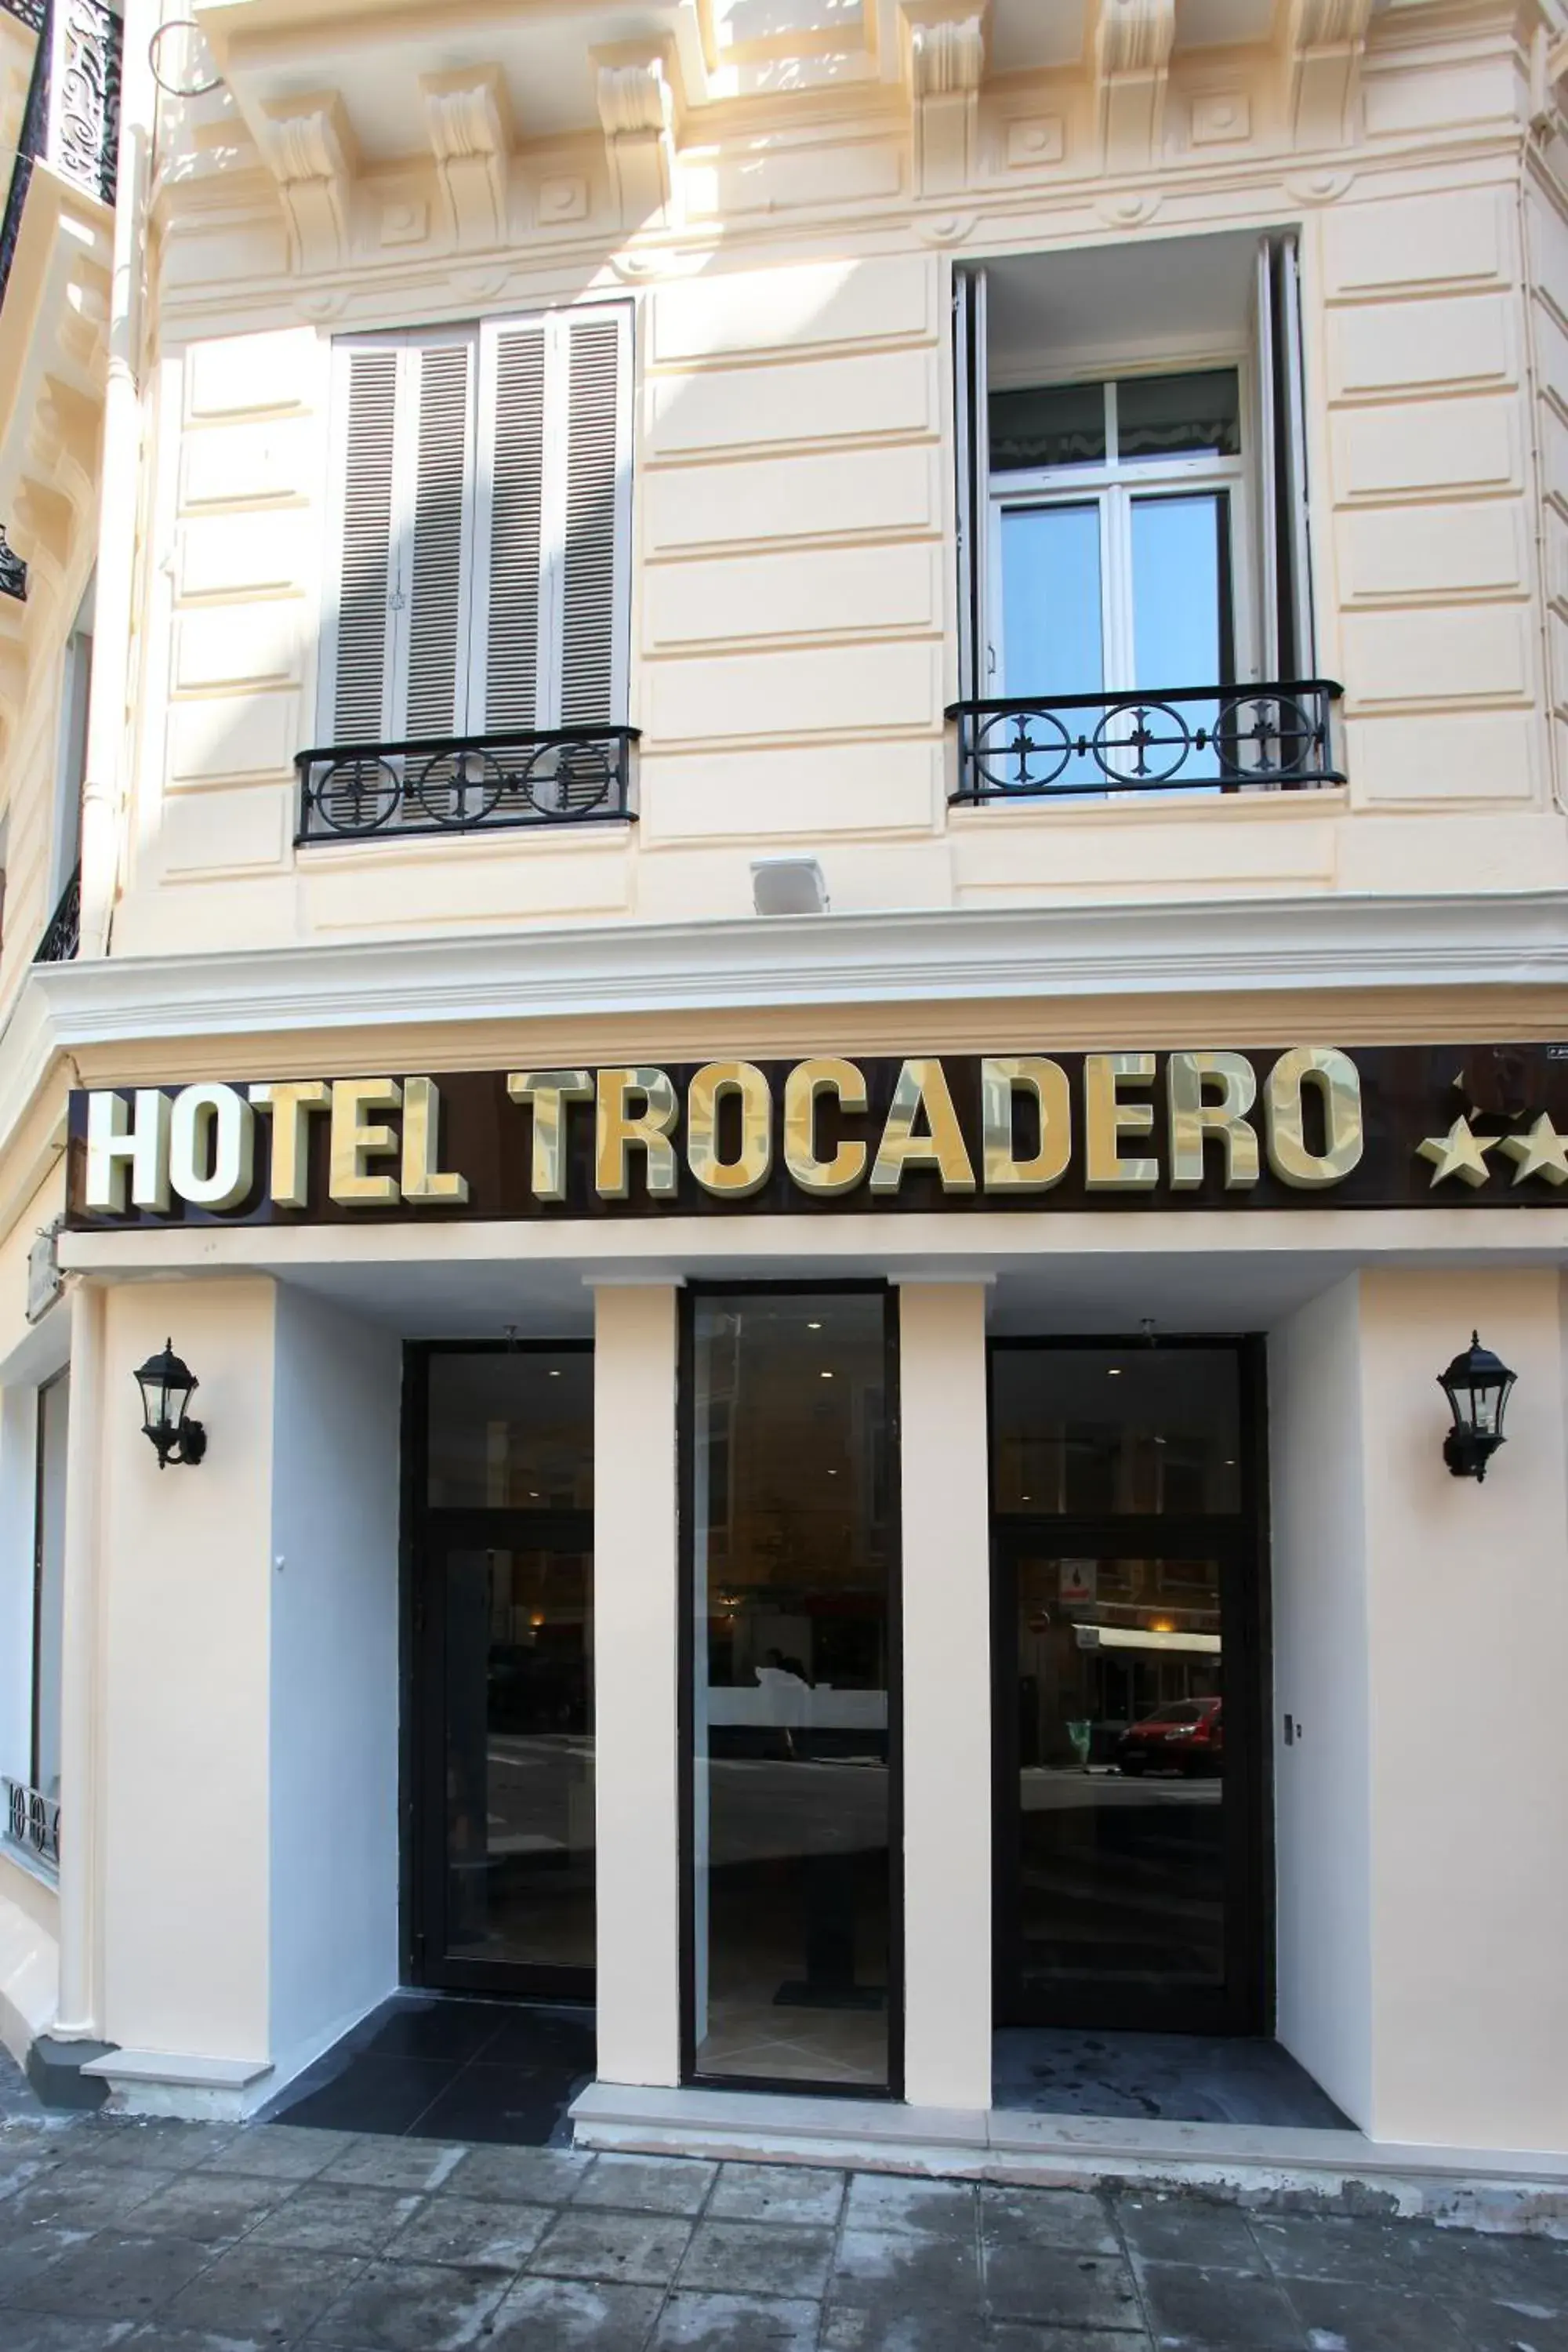 Facade/entrance in Trocadero